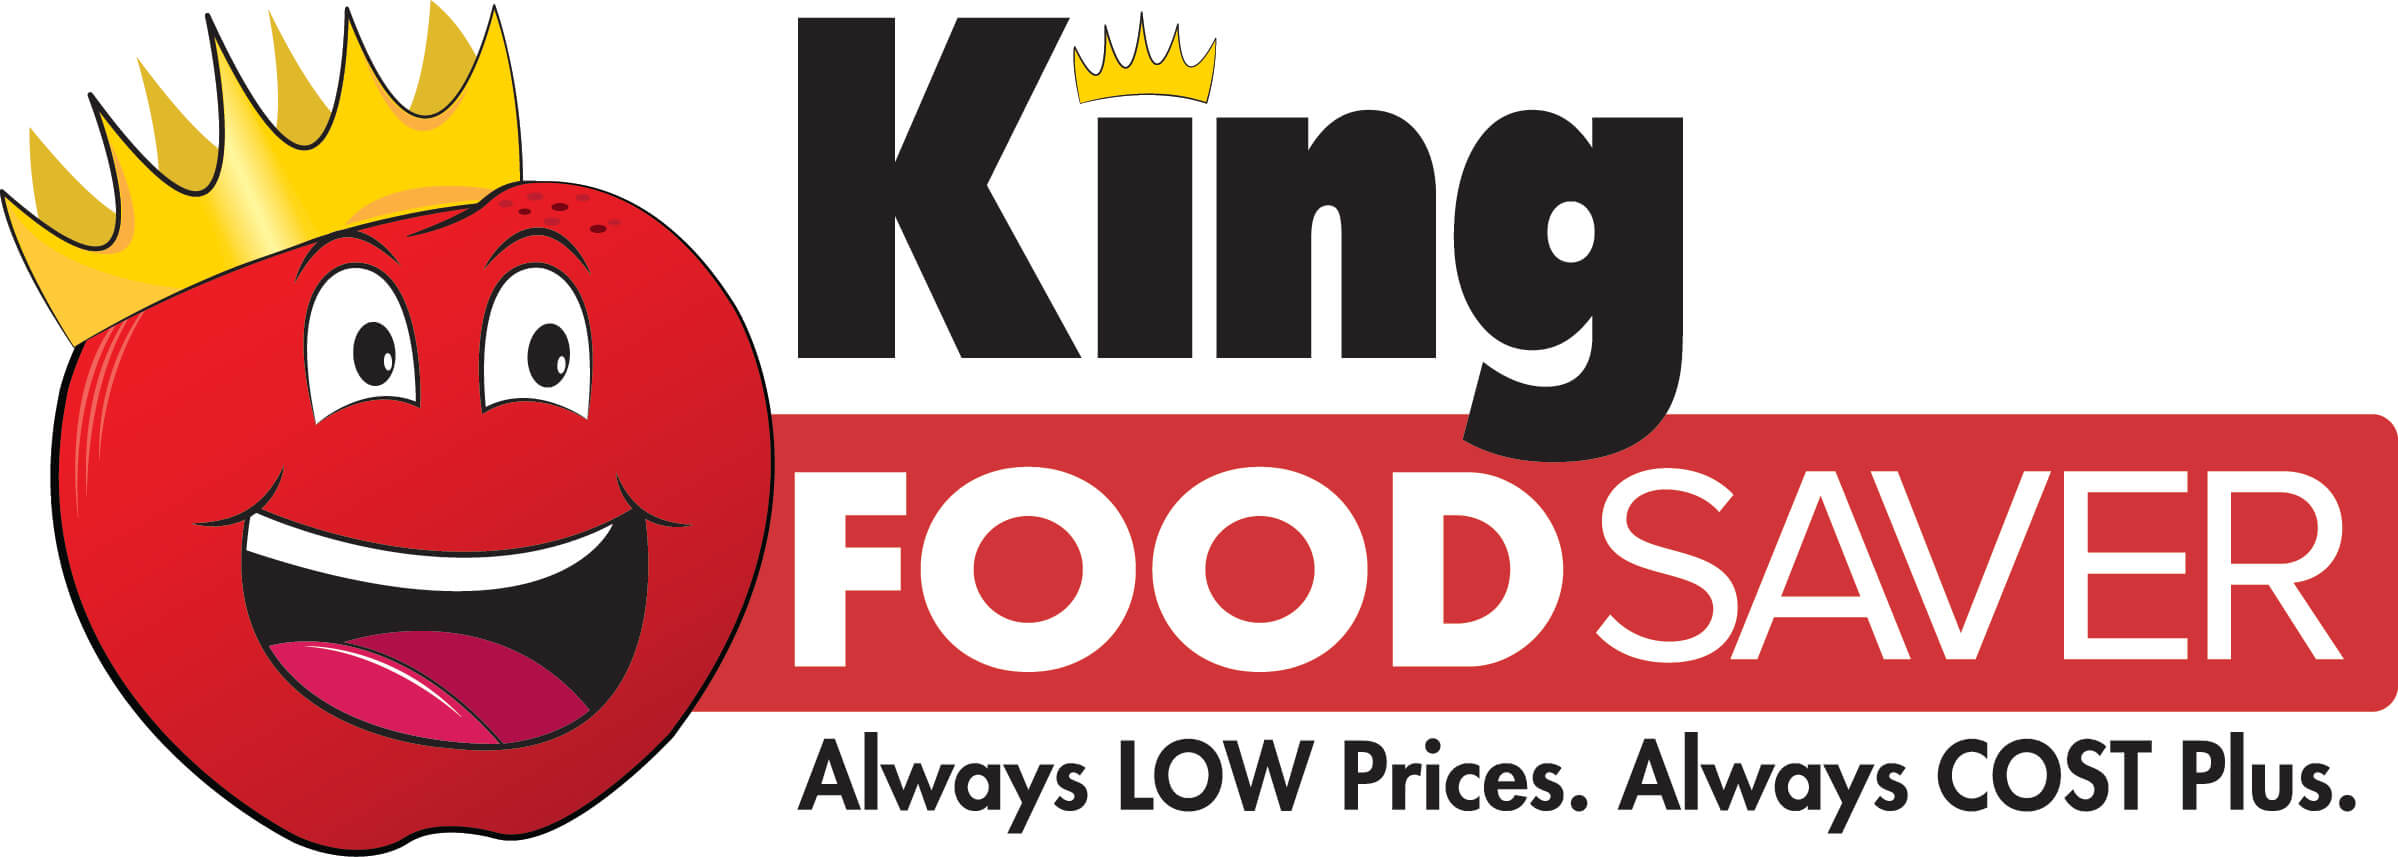 King Food Saver Logo